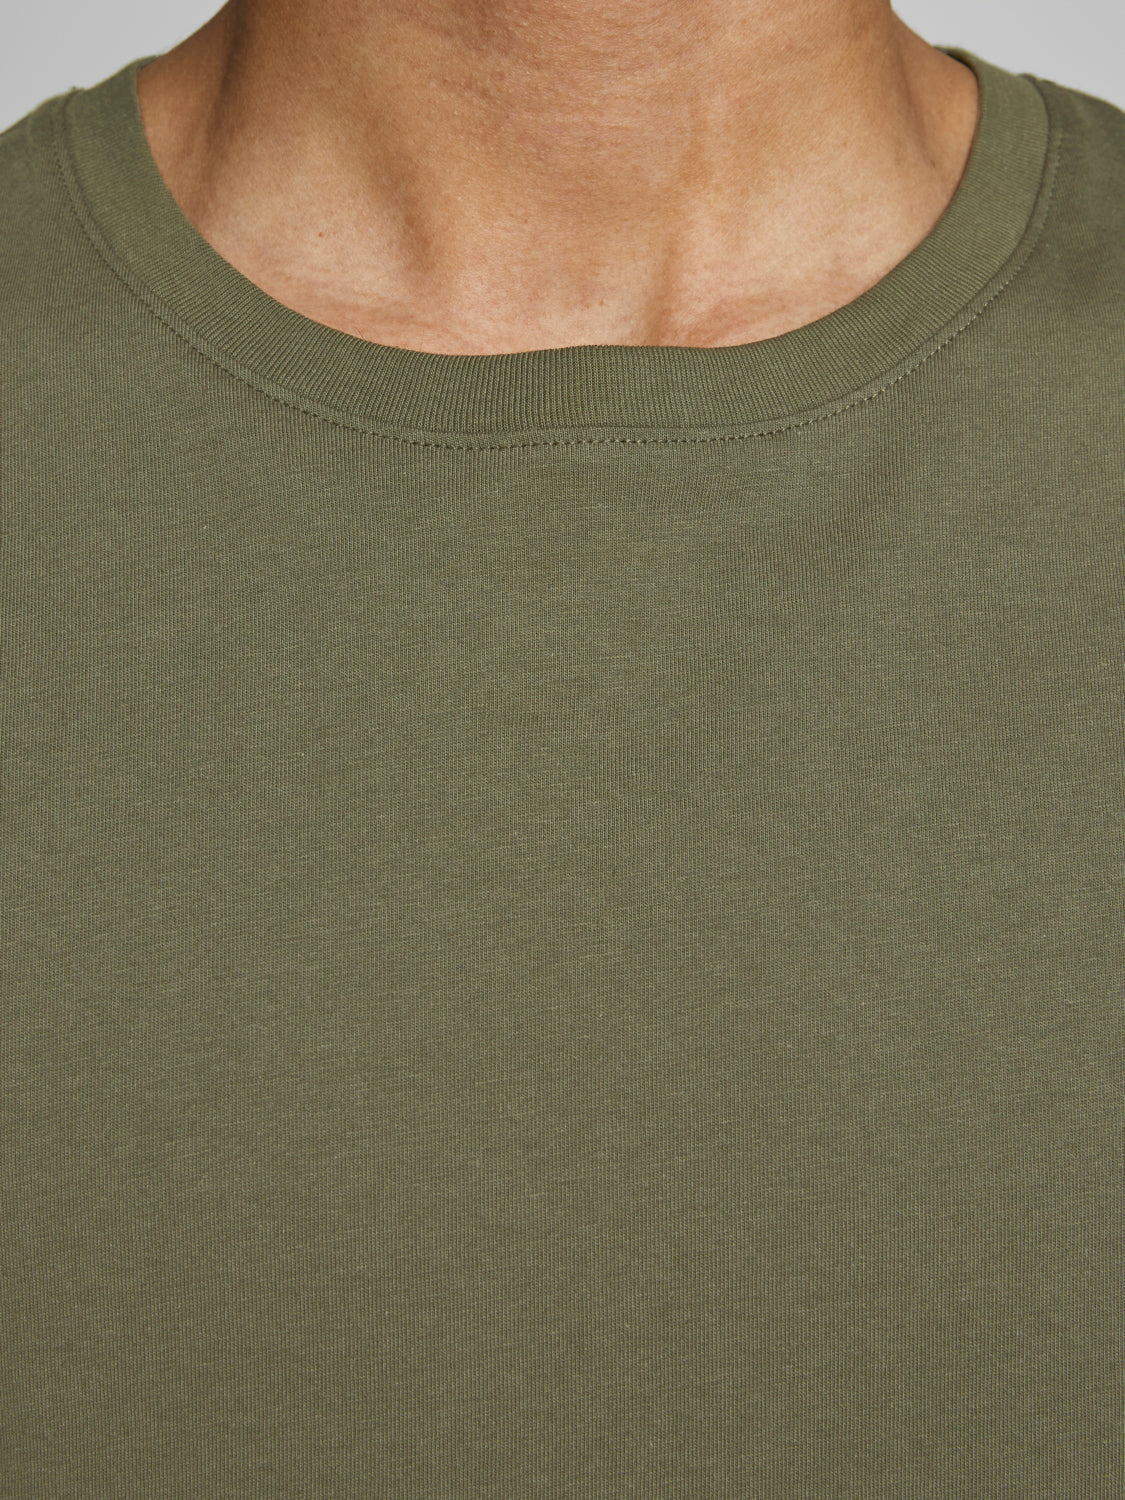 Camiseta básica manga corta verde - BÁSICA ORGANIC